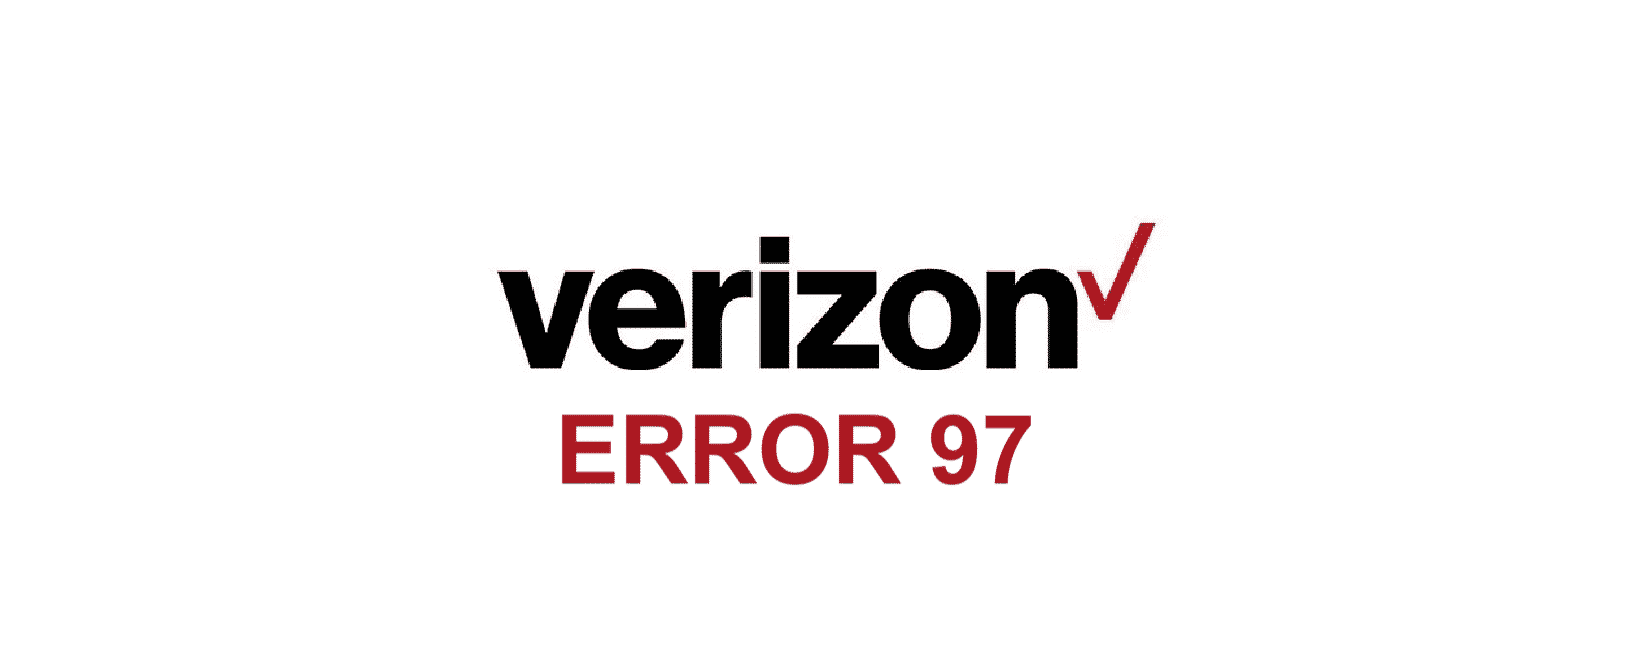 Verizon Error 97 Sms Origination Denied 2 Ways To Fix Internet Access Guide